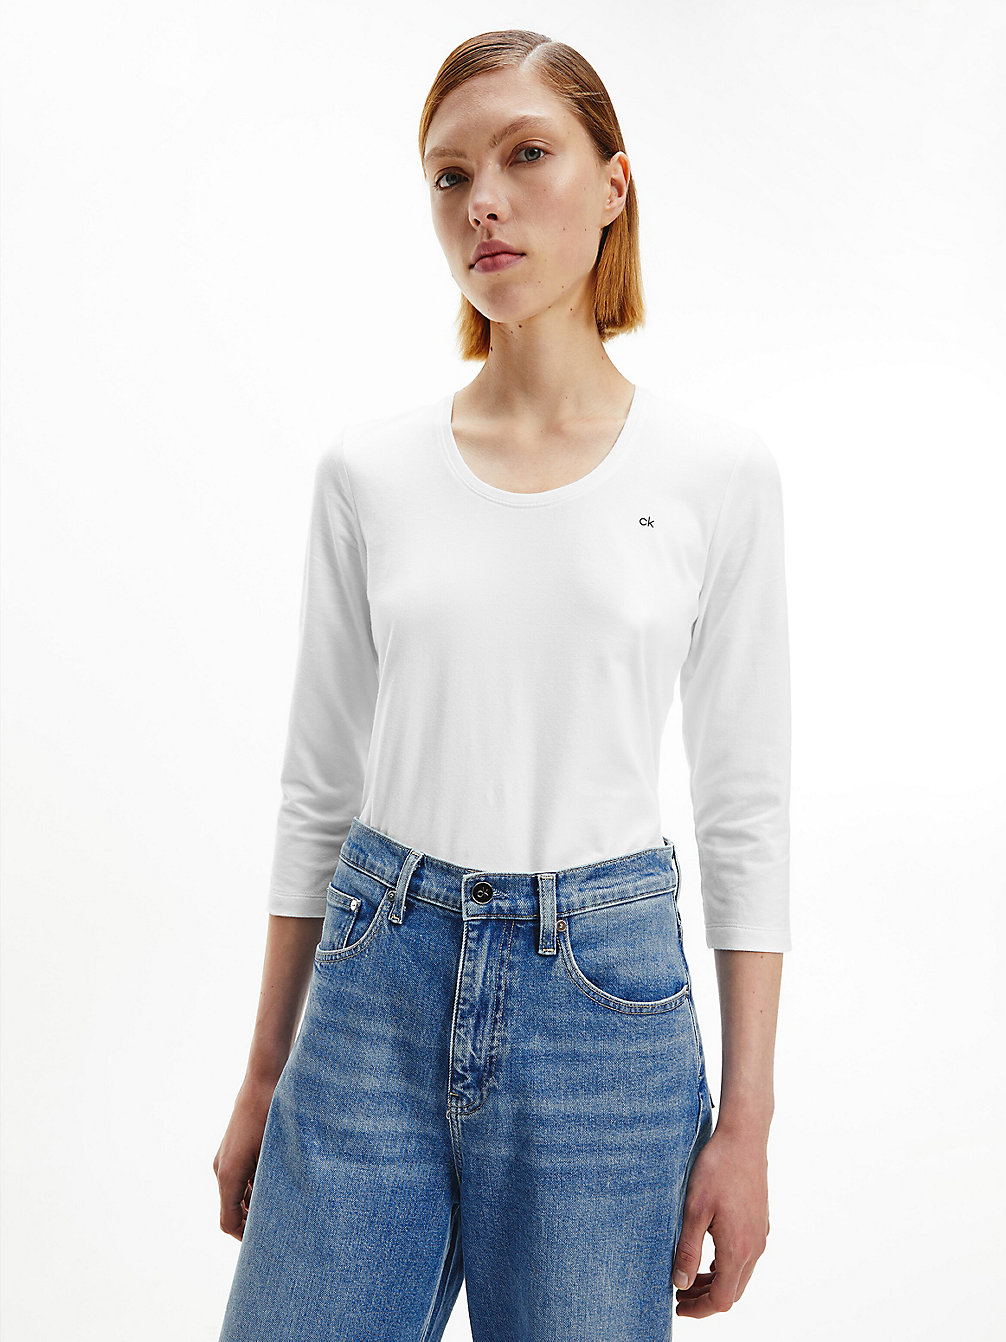 BRIGHT WHITE Schmales T-Shirt Aus Bio-Baumwolle undefined Damen Calvin Klein